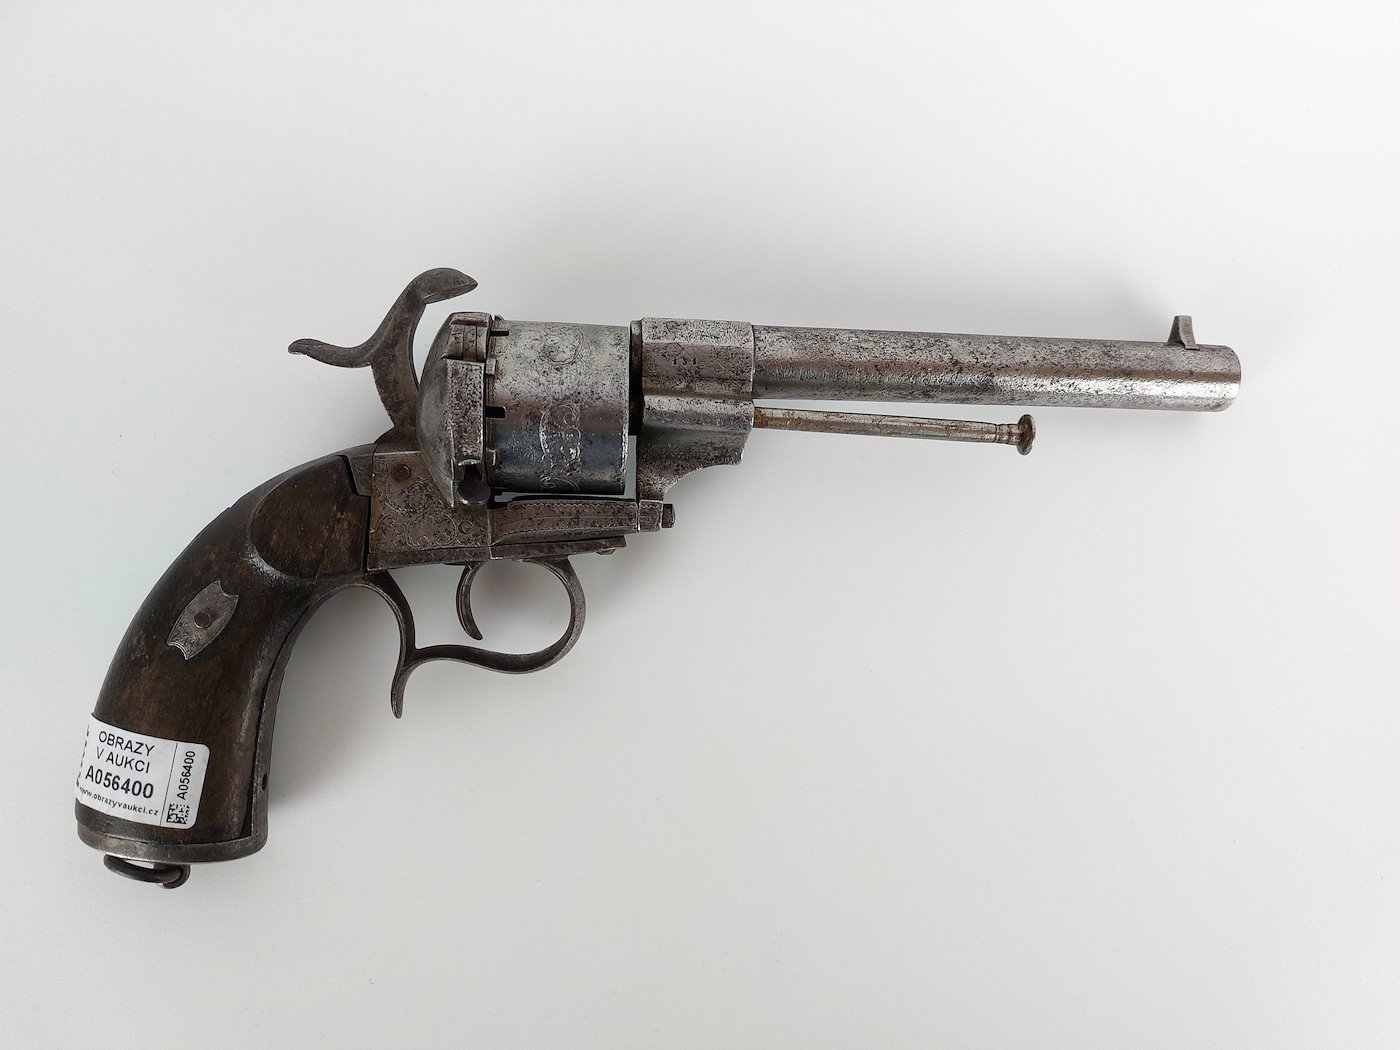 Neznámý autor - Revolver systému lefaucheux, ráže 12mm, zdoben rytinou